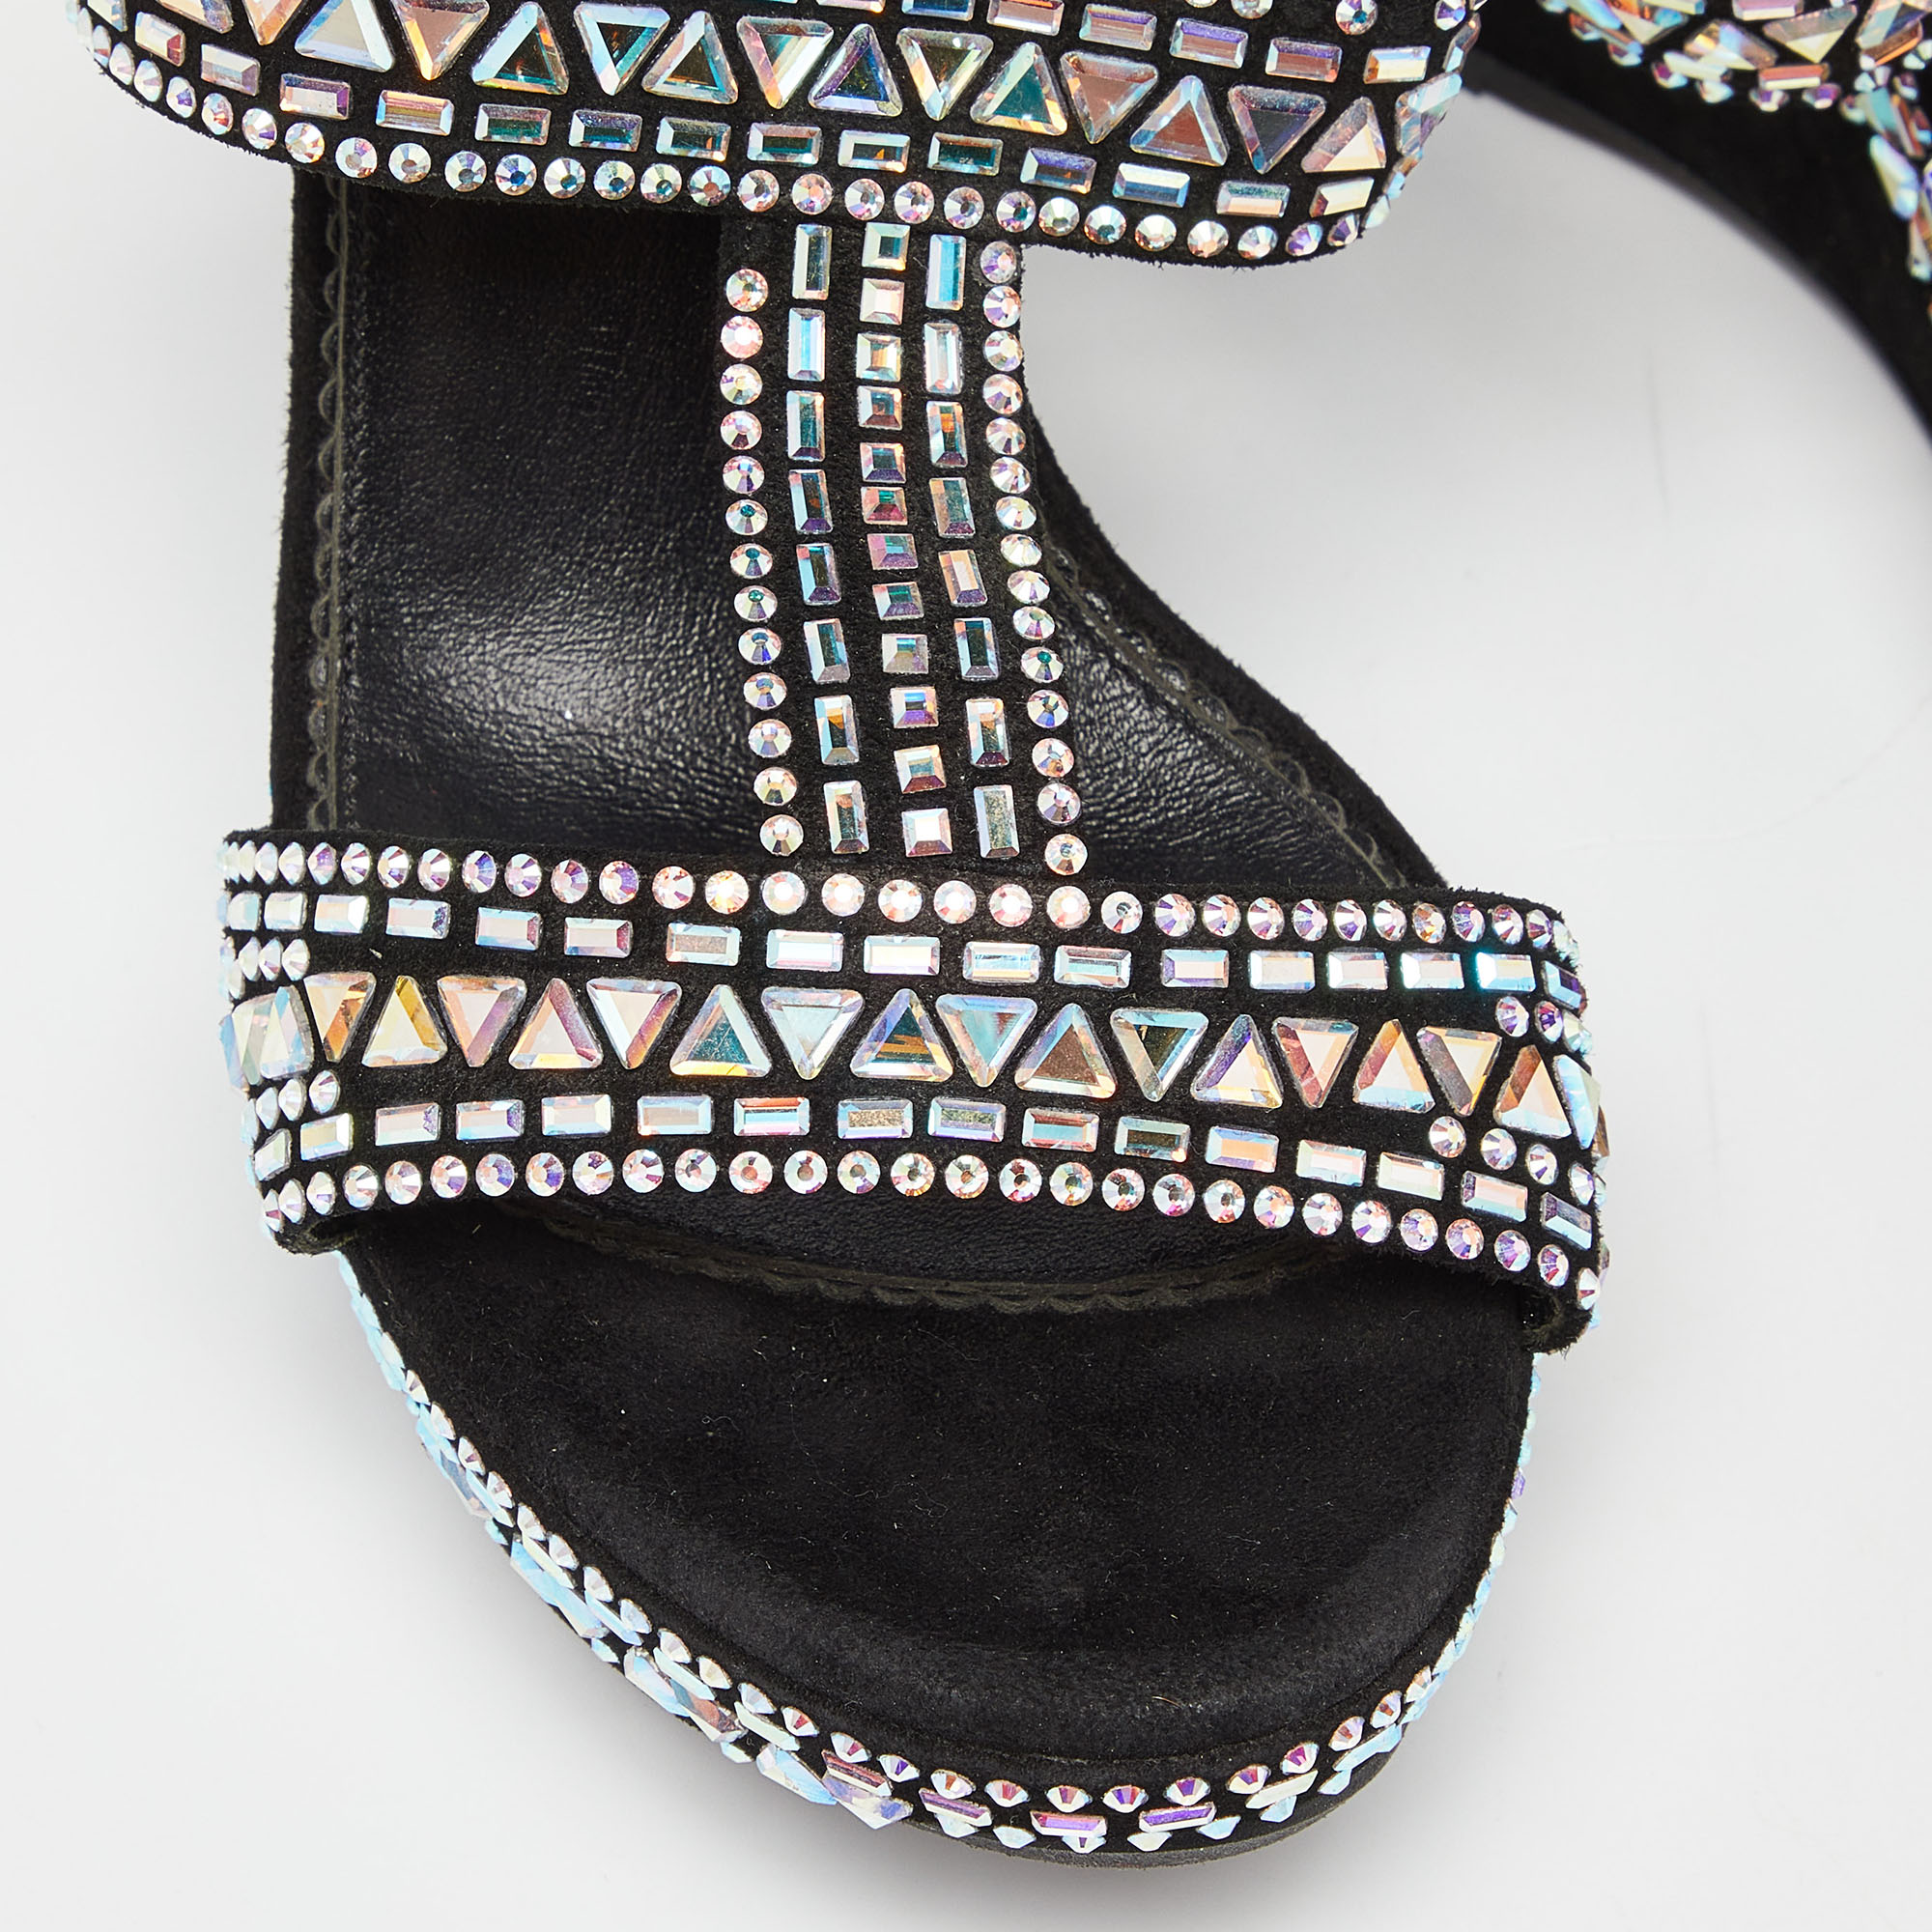 Le Silla Black Suede Embellished Wedge Sandals Size 39